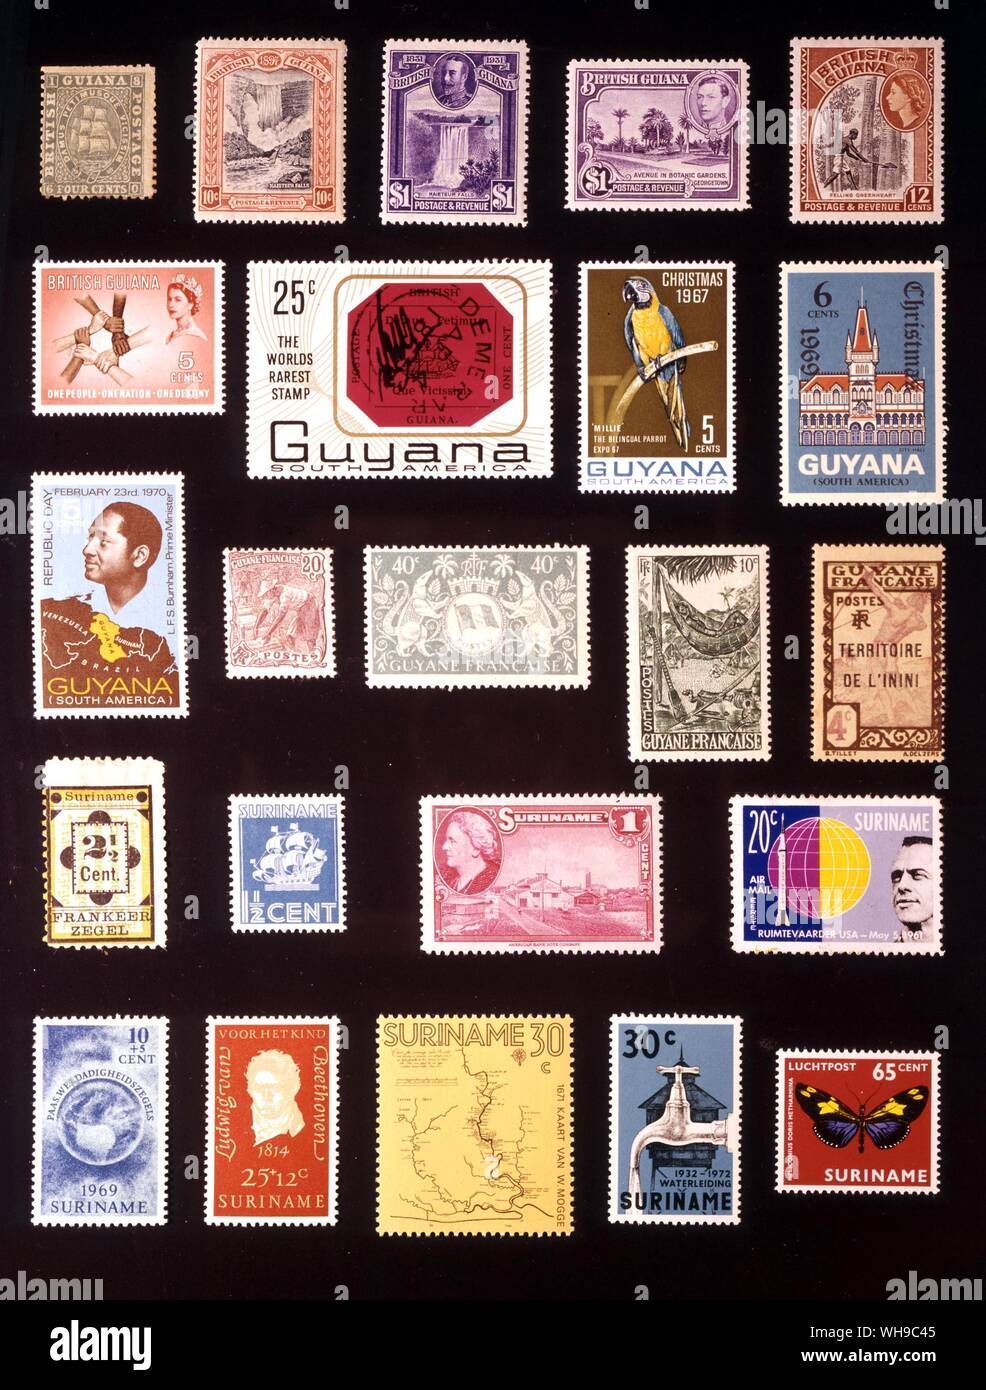 AMERICA - La Guyane: (da sinistra a destra) 1. La Guiana britannica, 4 centesimi, 1860 2. La Guiana britannica, 10 centesimi, 1898, 3. La Guiana britannica, 1 dollaro, 1931, 4. La Guiana britannica, 1 dollaro, 1938, 5. La Guiana britannica, 12 centesimi, 1954, 6. La Guiana britannica, 5 centesimi, 1961, 7. La Guyana, 25 centesimi, 1967, 8. La Guyana, 5 centesimi, 1969, 9. La Guyana, 6 centesimi, 1969, 10. La Guyana, 5 centesimi, 1970, 11. Guiana francese, 20 centesimi, 1904, 12. Guiana francese, 40 centesimi, 1945, 13. Guiana francese, 10 centesimi, 1947, 14. Inini, 4 centesimi, 1932, 15. Il Suriname, 2,5 centesimi, 1892, 16. Il Suriname, 1,5 centesimi, 1936, 17. Il Suriname, 1 cent, 1945, 18. Il Suriname, 20 Foto Stock